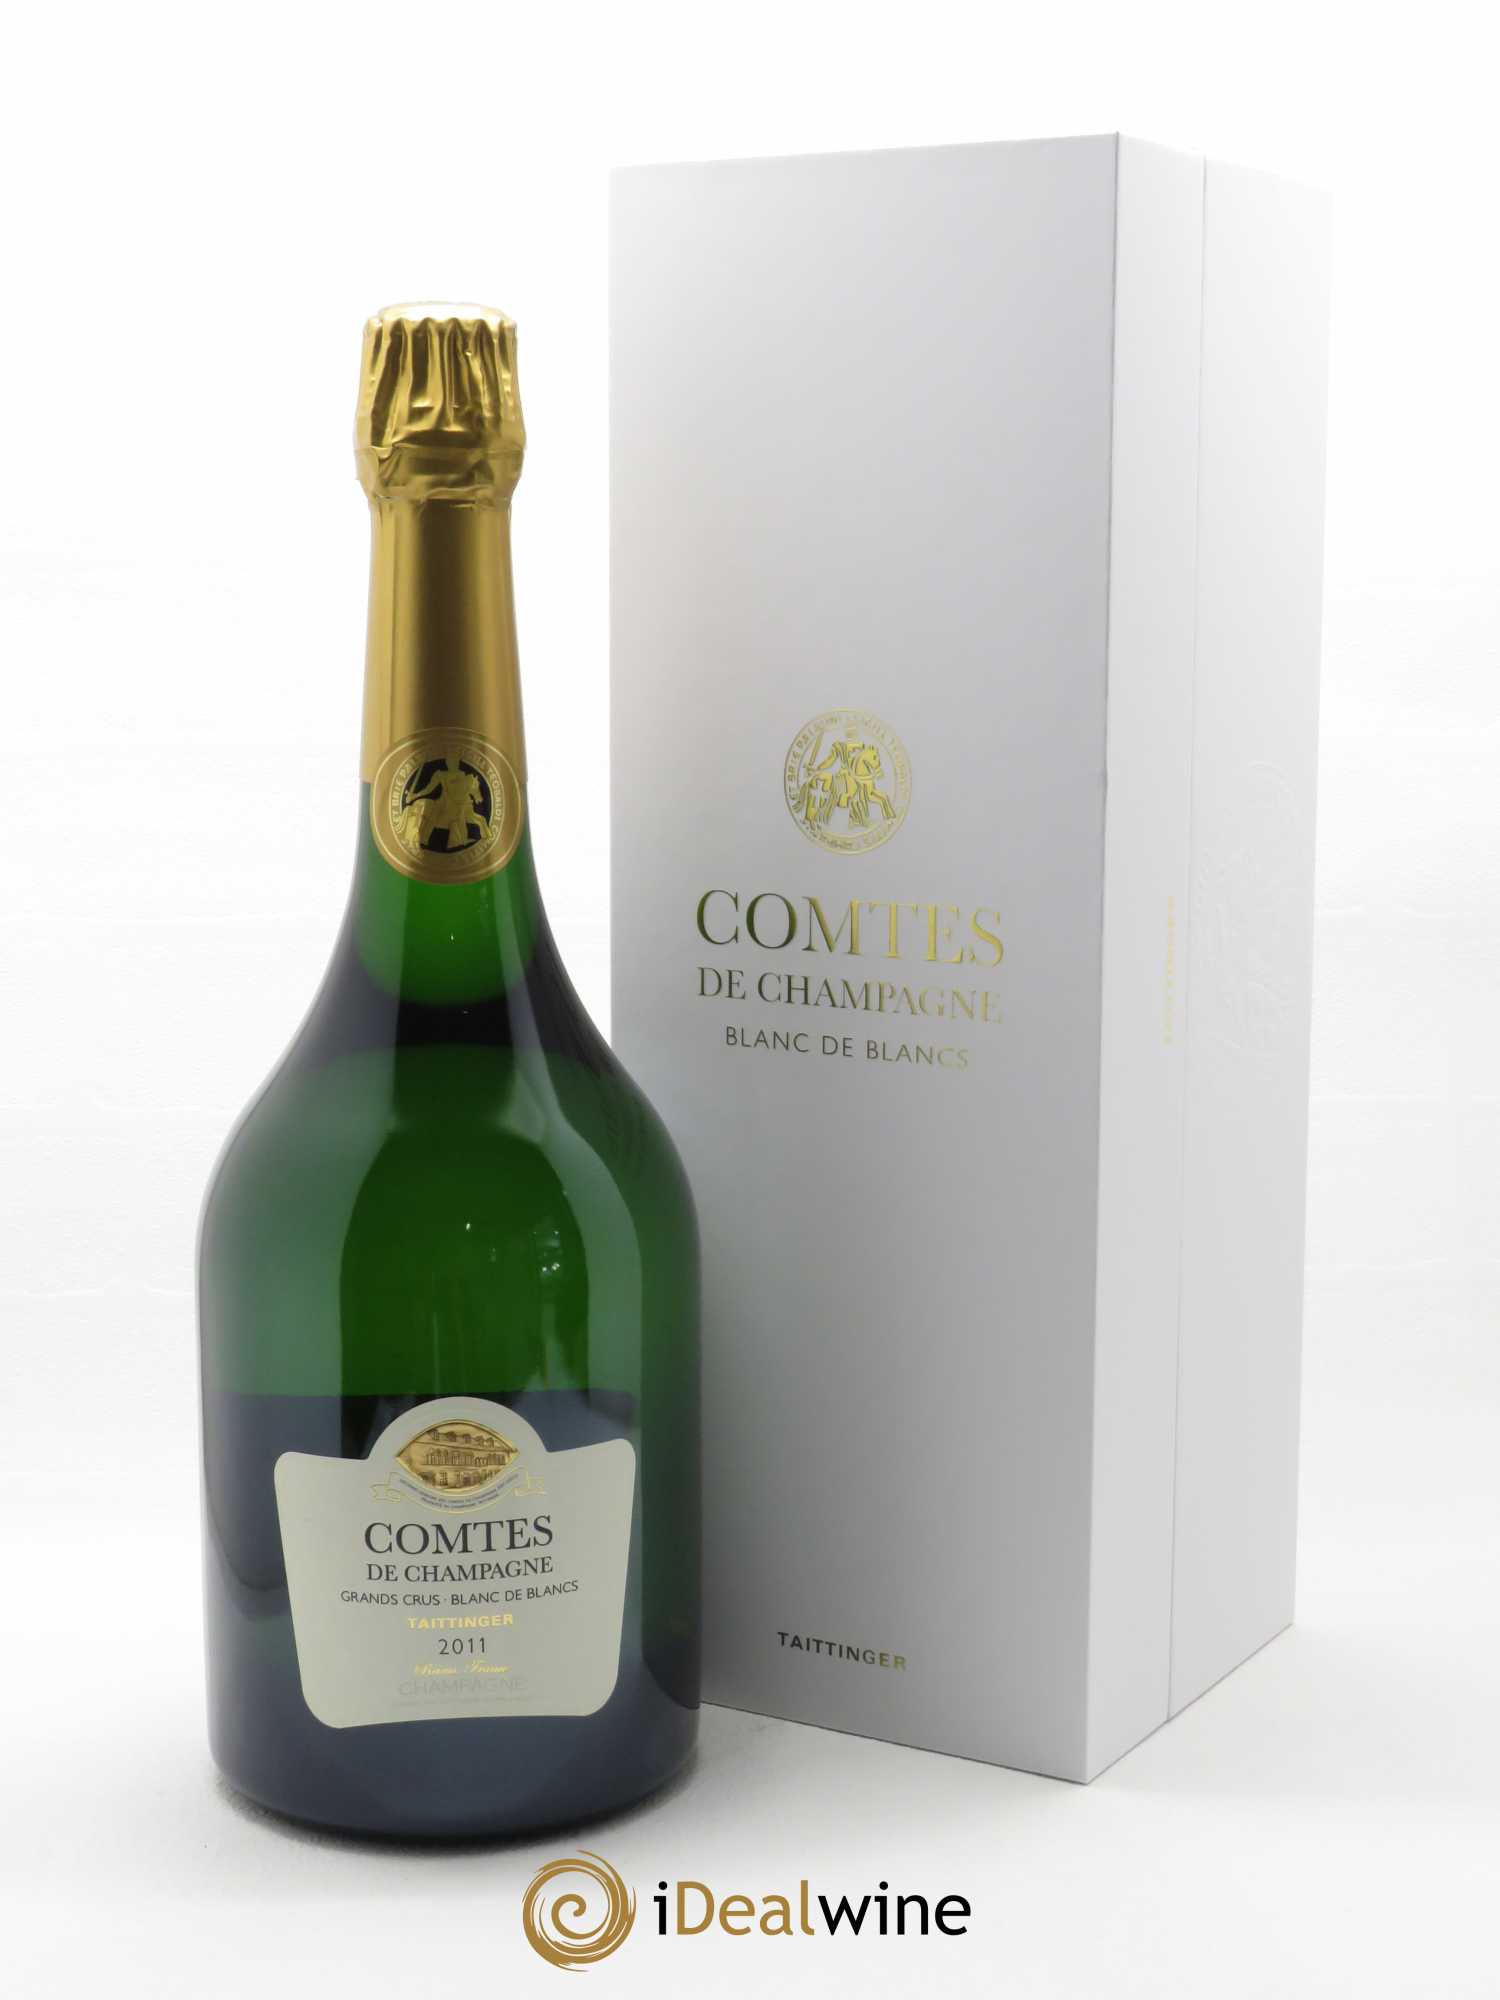 Kaufen Sie Comtes de Champagne Taittinger 2011 (lot: 58172)